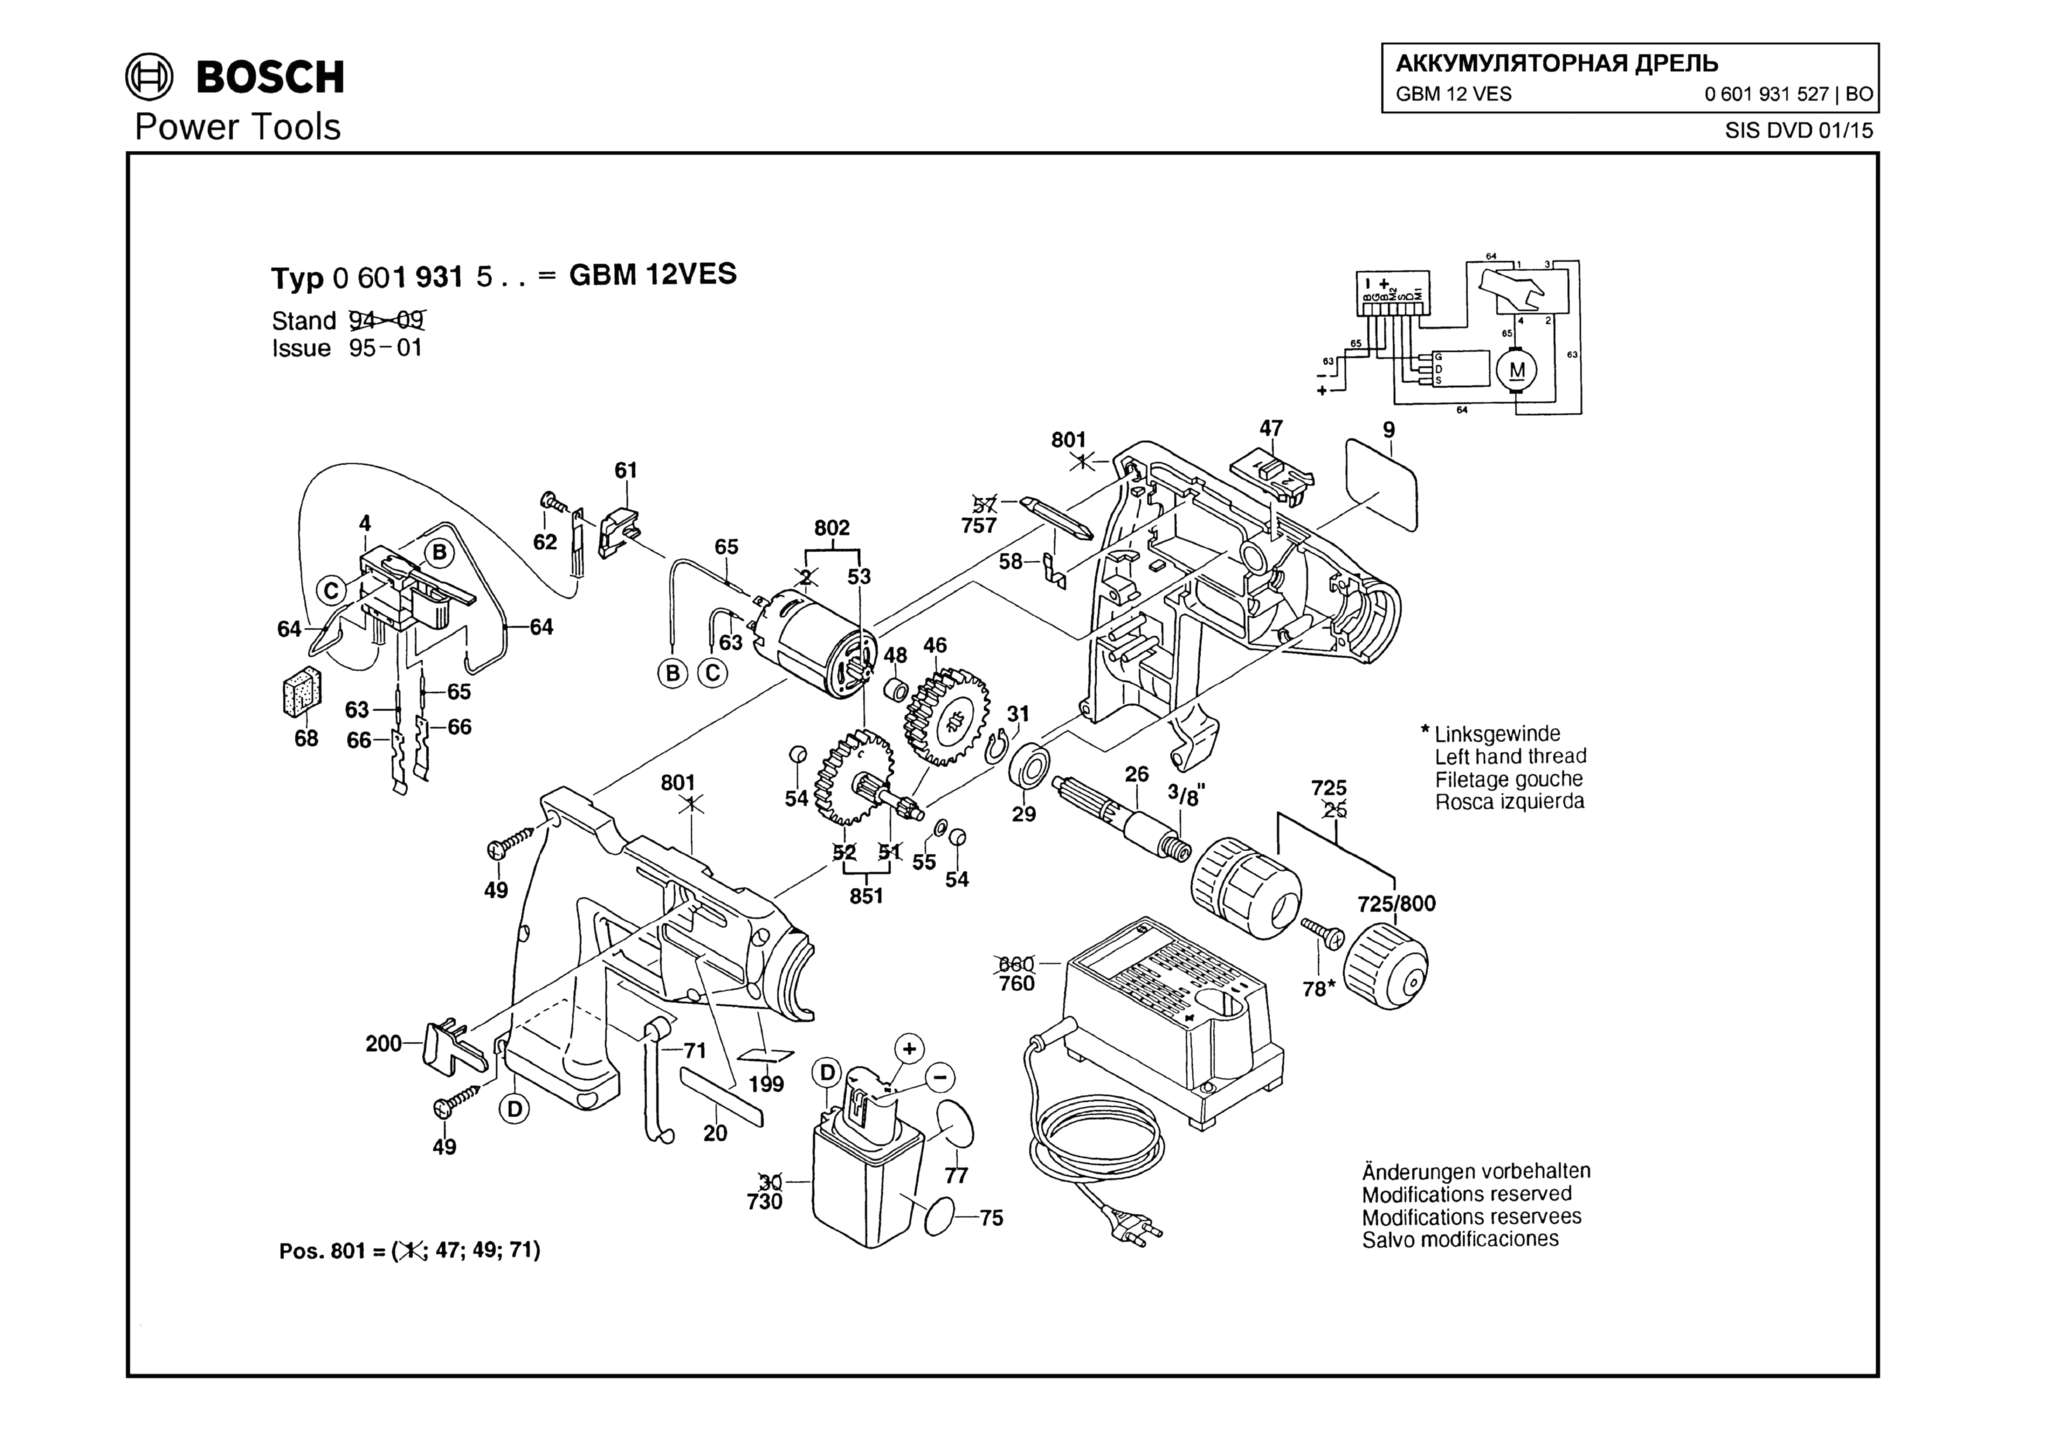 Запчасти, схема и деталировка Bosch GBM 12 VES (ТИП 0601931527)